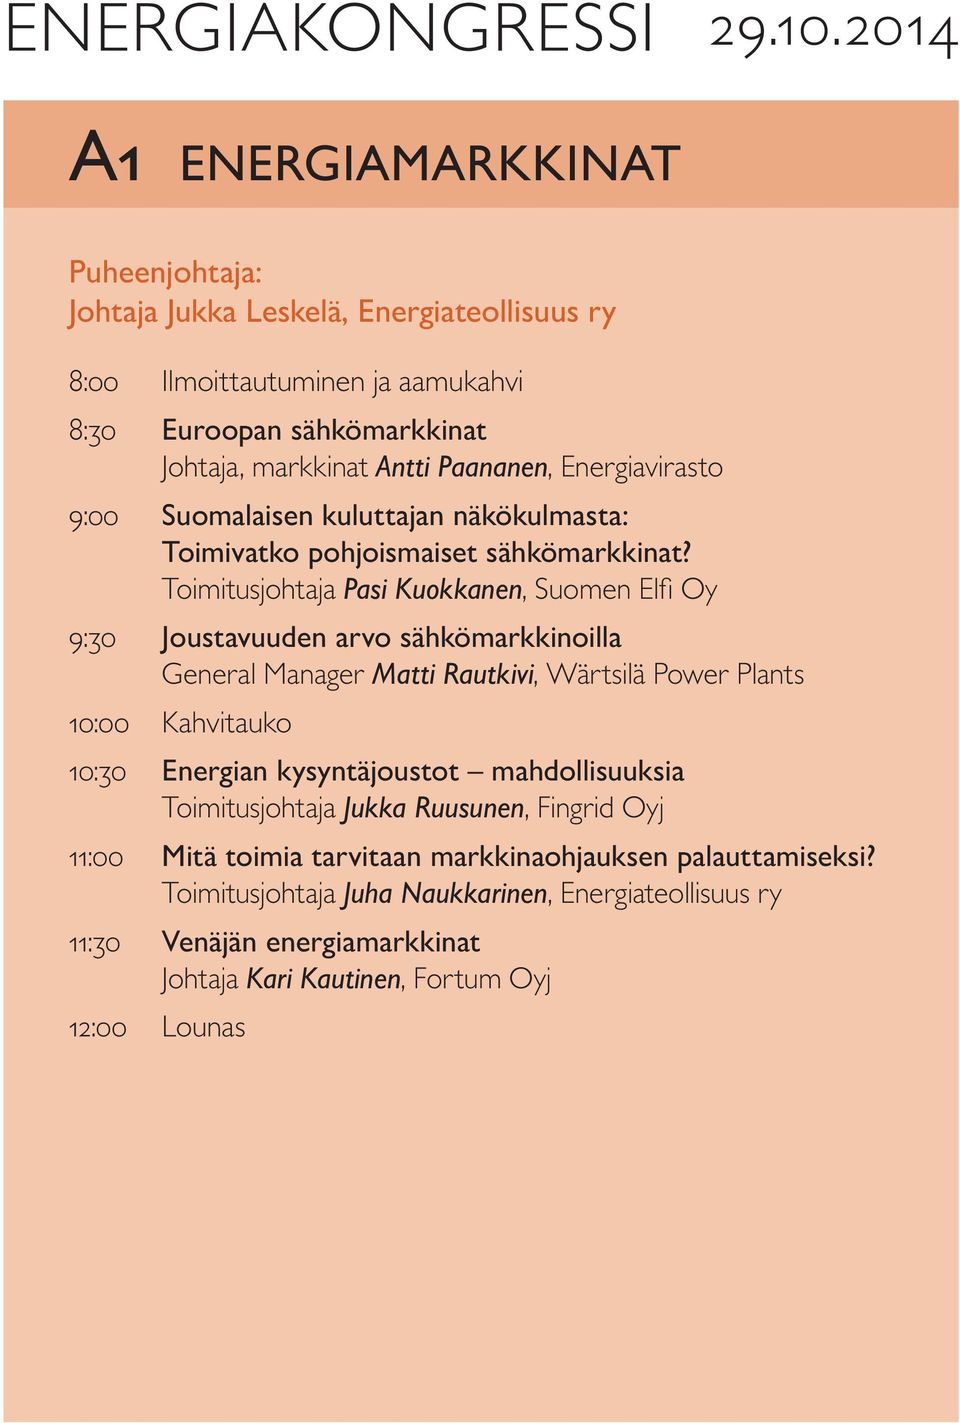 Energiavirasto 9:00 Suomalaisen kuluttajan näkökulmasta: Toimivatko pohjoismaiset sähkömarkkinat?